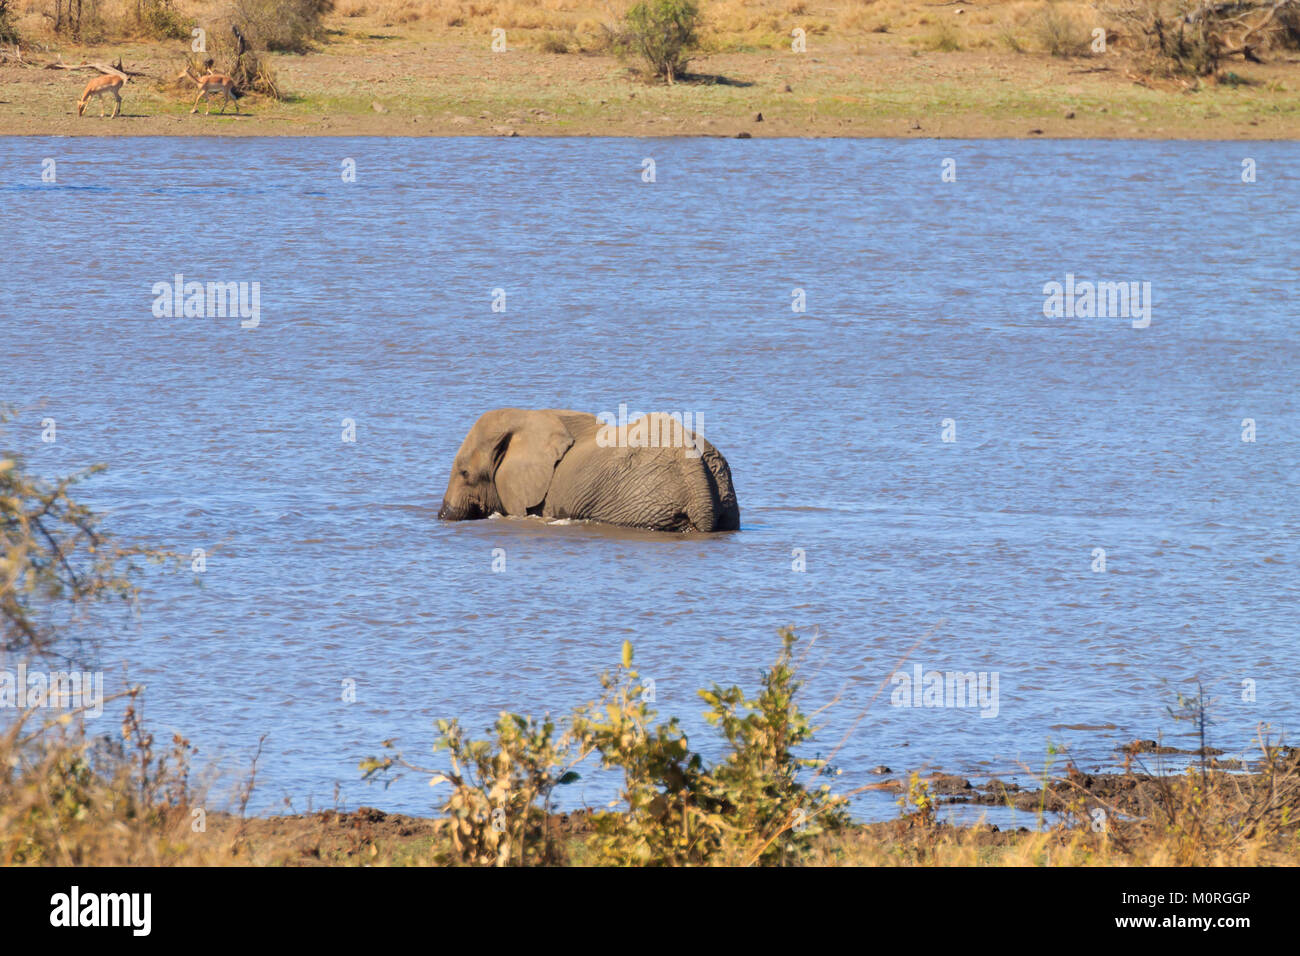 Elefant von Krüger Nationalpark, Südafrika. Afrikanische Tierwelt. Loxodonta africana Stockfoto